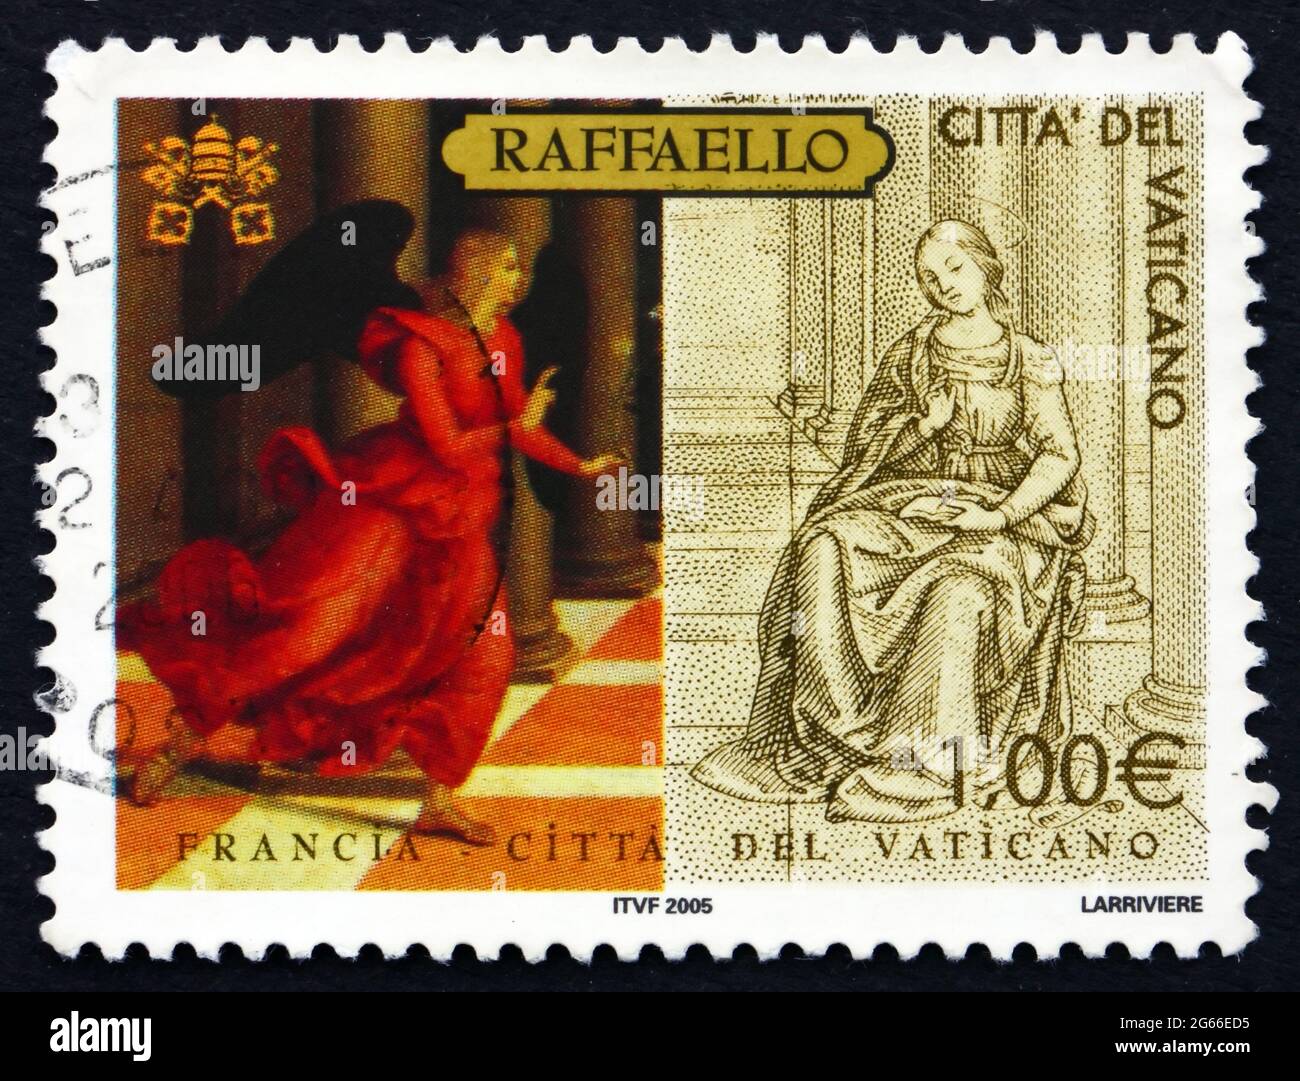 VATIKAN - UM 2005: Eine im Vatikan gedruckte Briefmarke zeigt die Verkündigung, Gemälde von Raphael, Weihnachten, um 2005 Stockfoto